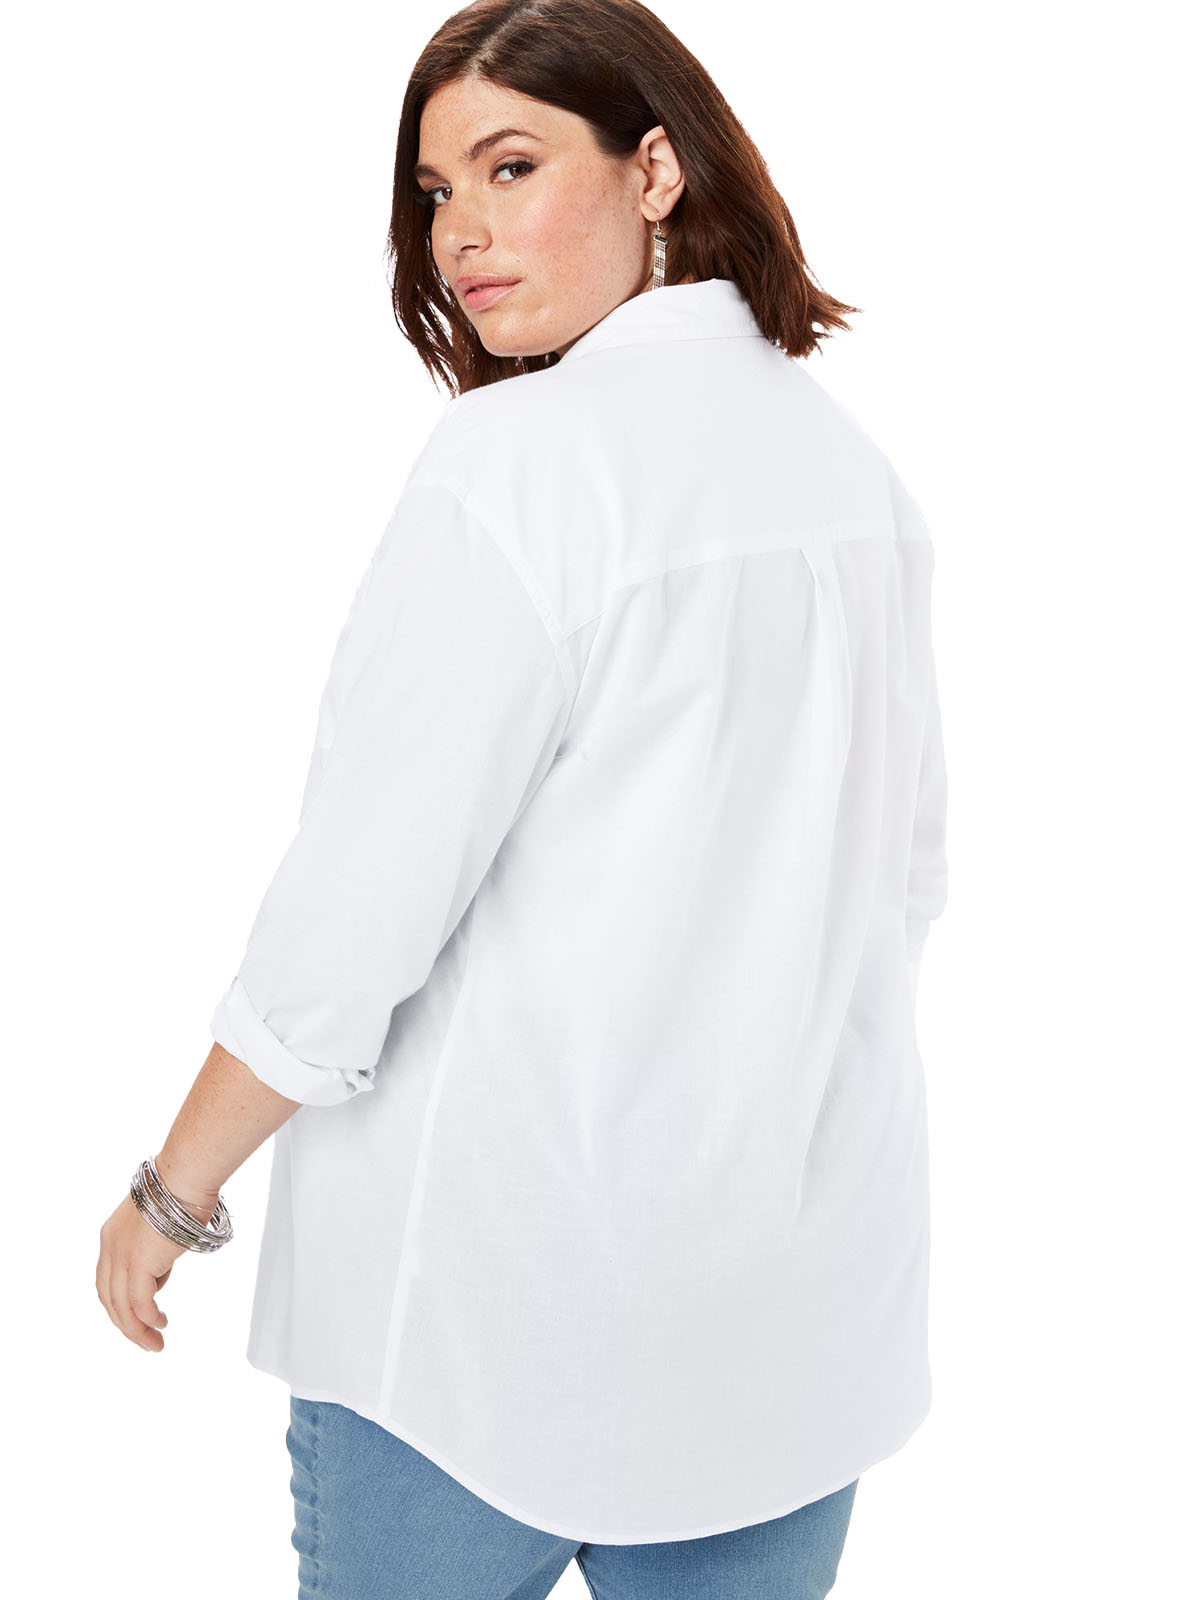 Roaman's - - Roamans WHITE Button-Front Boyfriend Shirt - Plus Size 18 ...